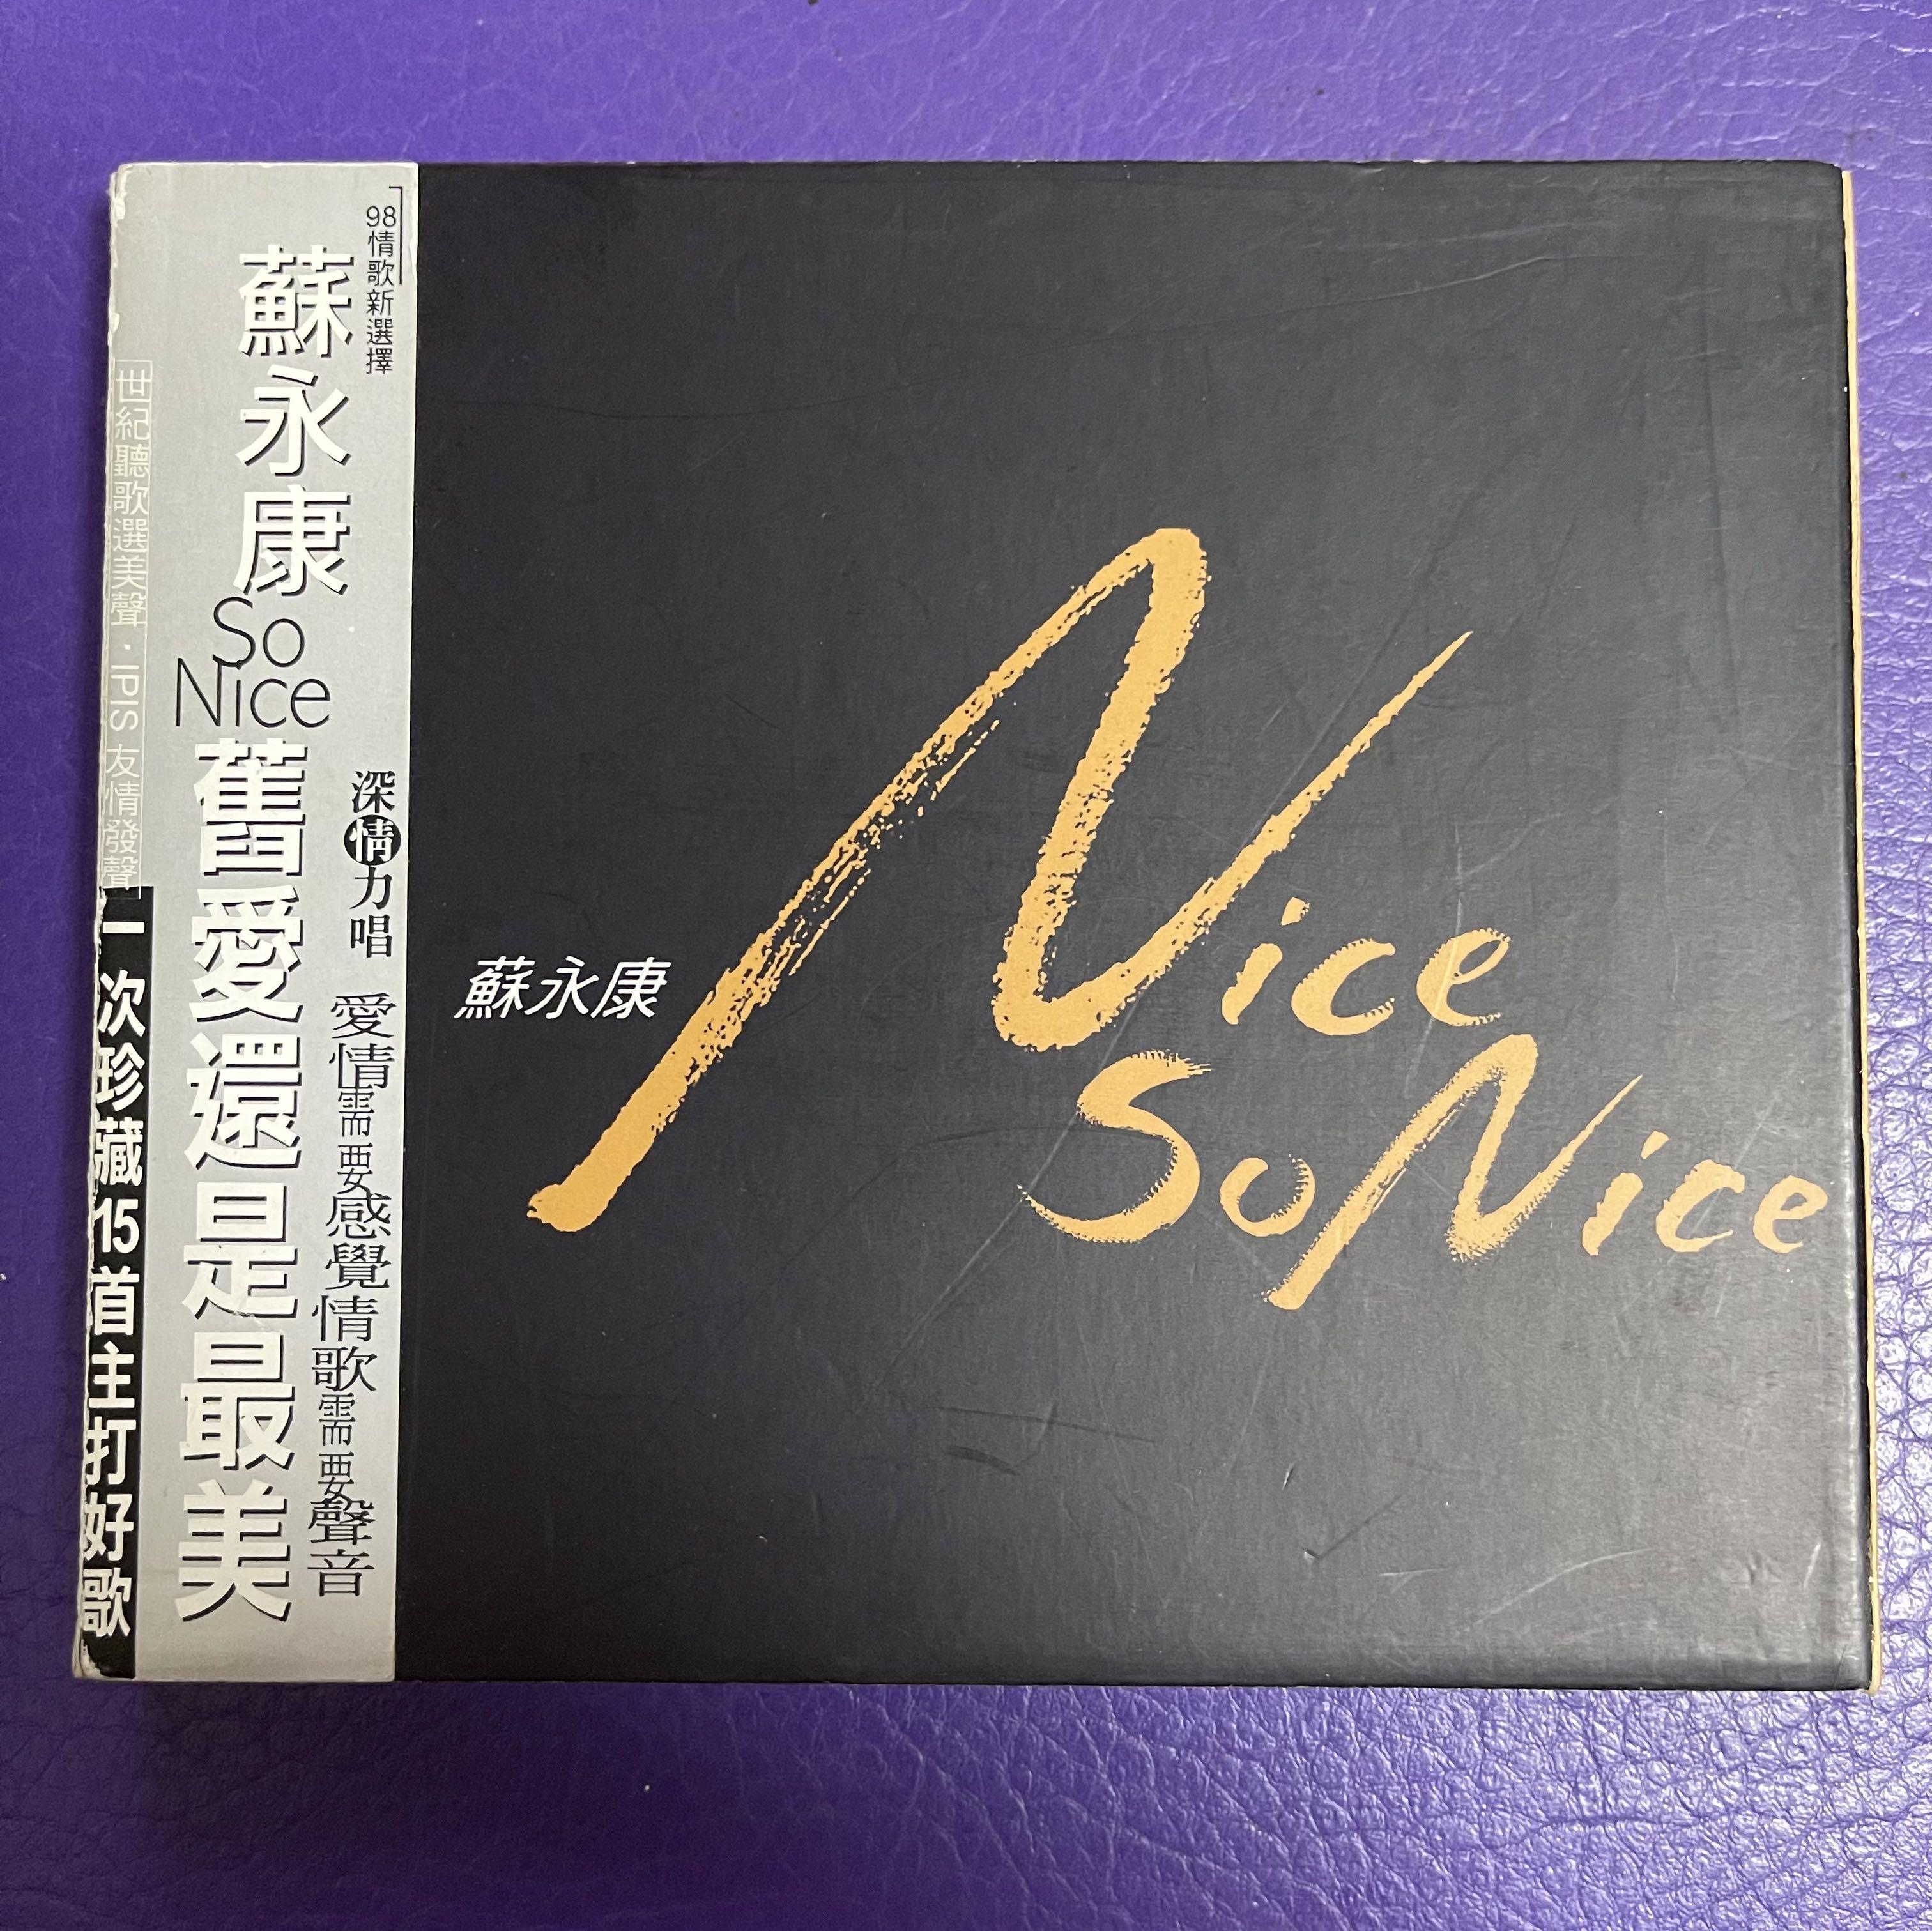 蘇永康WILIAM CD NICE SO NICE 舊愛還是最美精選集齊件有側紙台灣版舊 